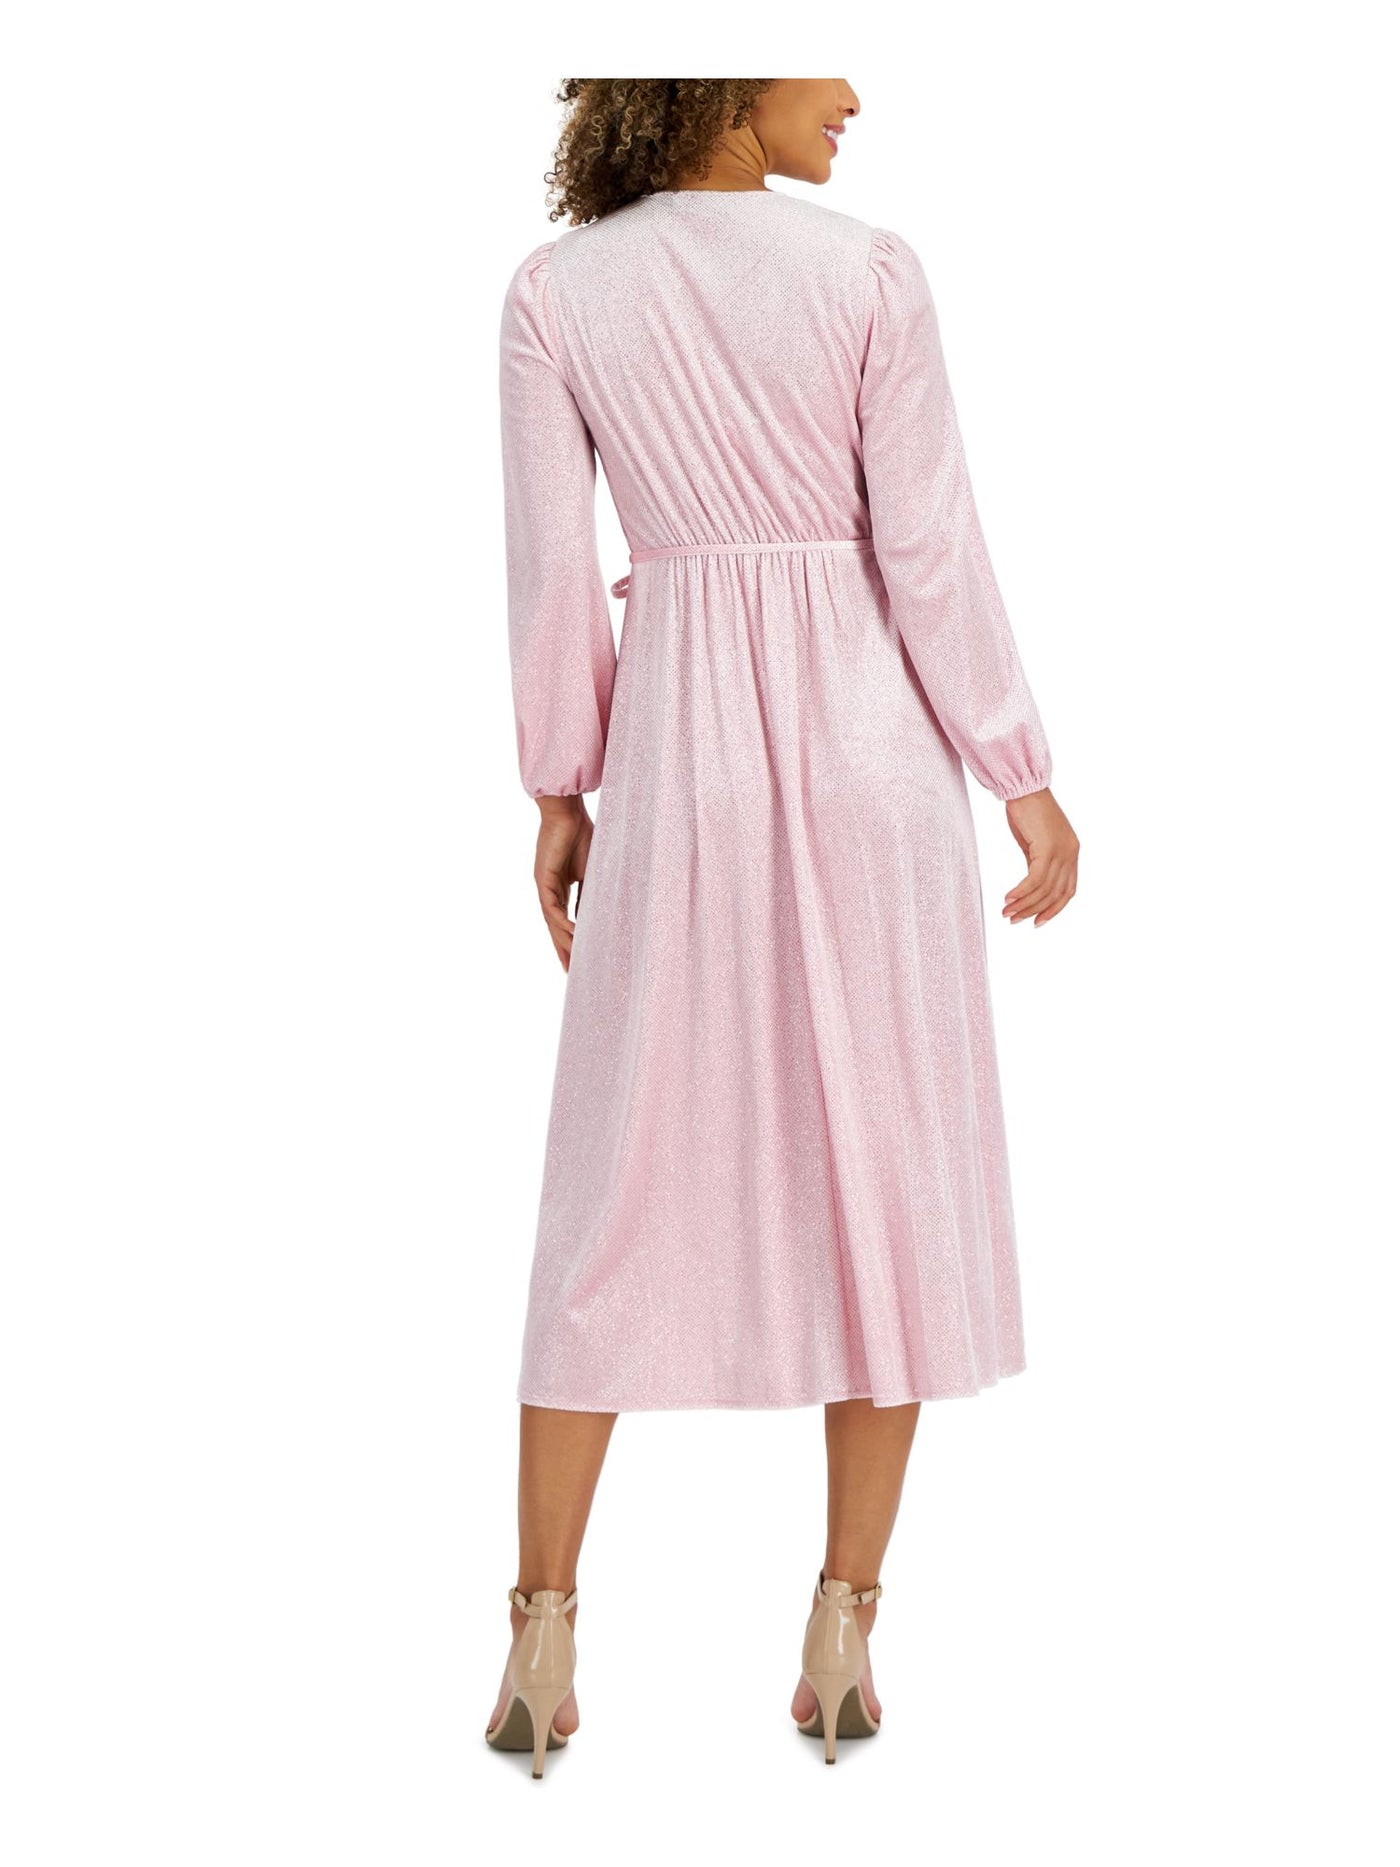 KASPER DRESS Womens Pink Darted Unlined Tie Belt Pullover Polka Dot Long Sleeve Surplice Neckline Midi Fit + Flare Dress XXL